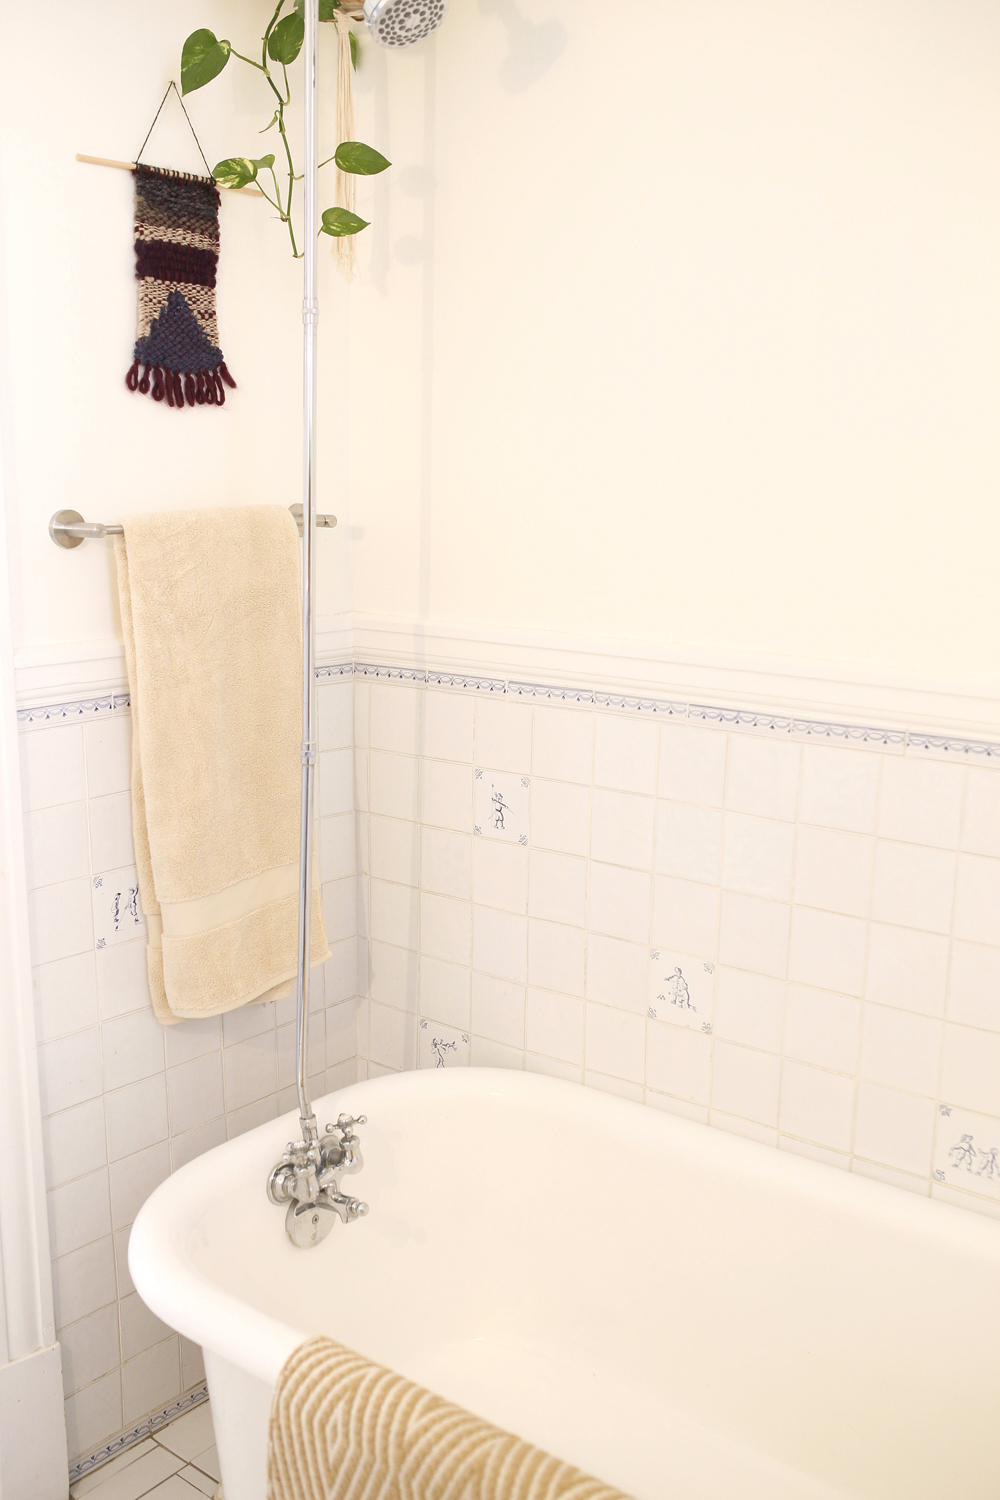 tub, beige towel, macrame above towel